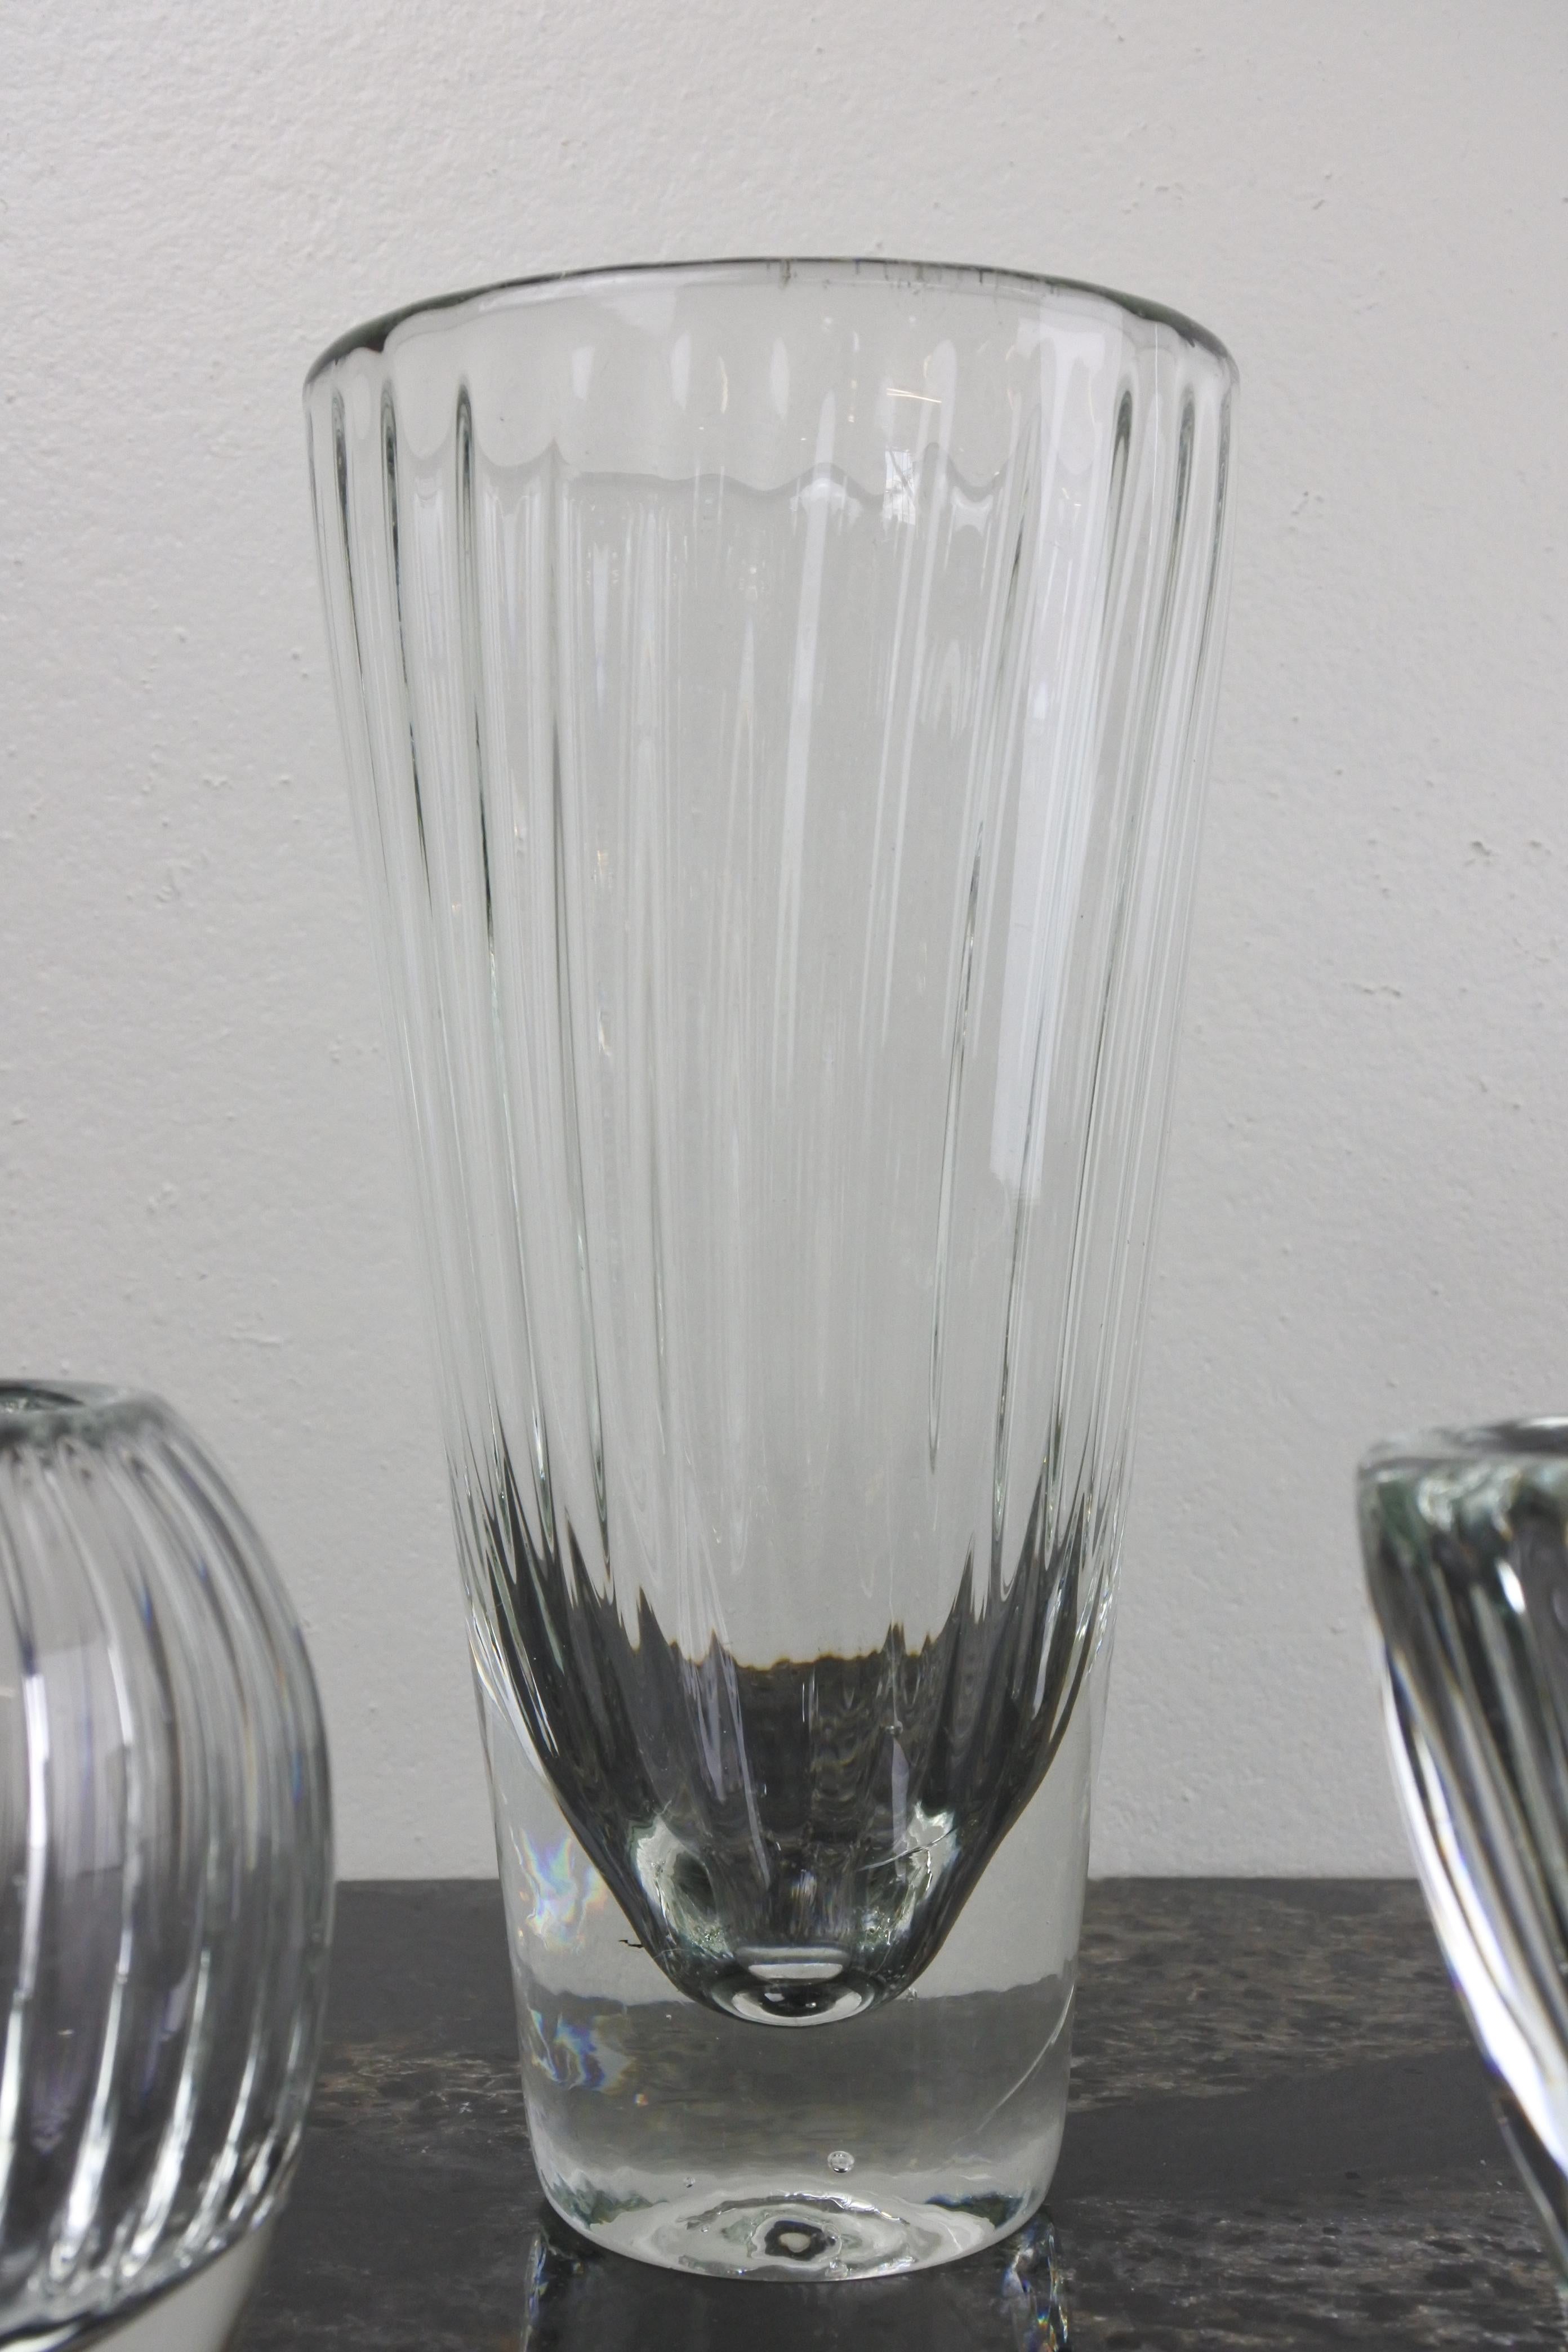 Ensemble de quatre vases en verre d'art soufflé de Karhula-Iittala.
Série Löytö.
Conçu et fabriqué en Finlande en 1959.
Hauteurs : 17.5 cm, 14 cm, 8,5 cm et 8 cm

Littérature : Catalogues Iittala de l'époque.